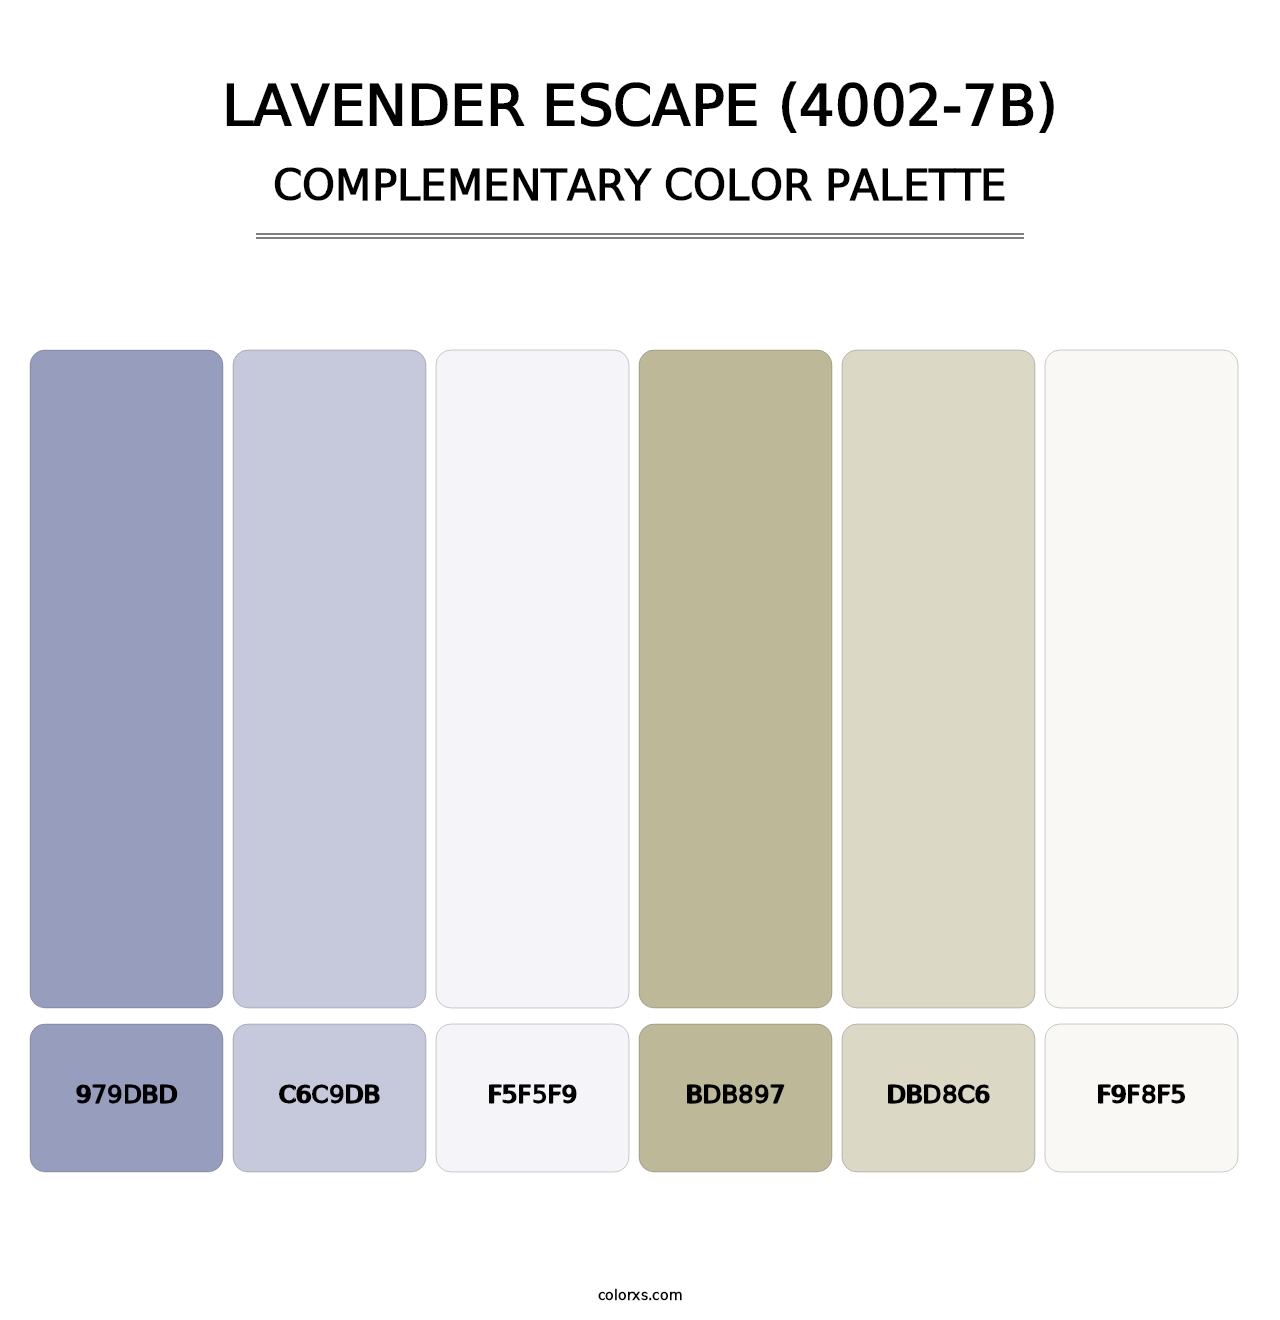 Lavender Escape (4002-7B) - Complementary Color Palette